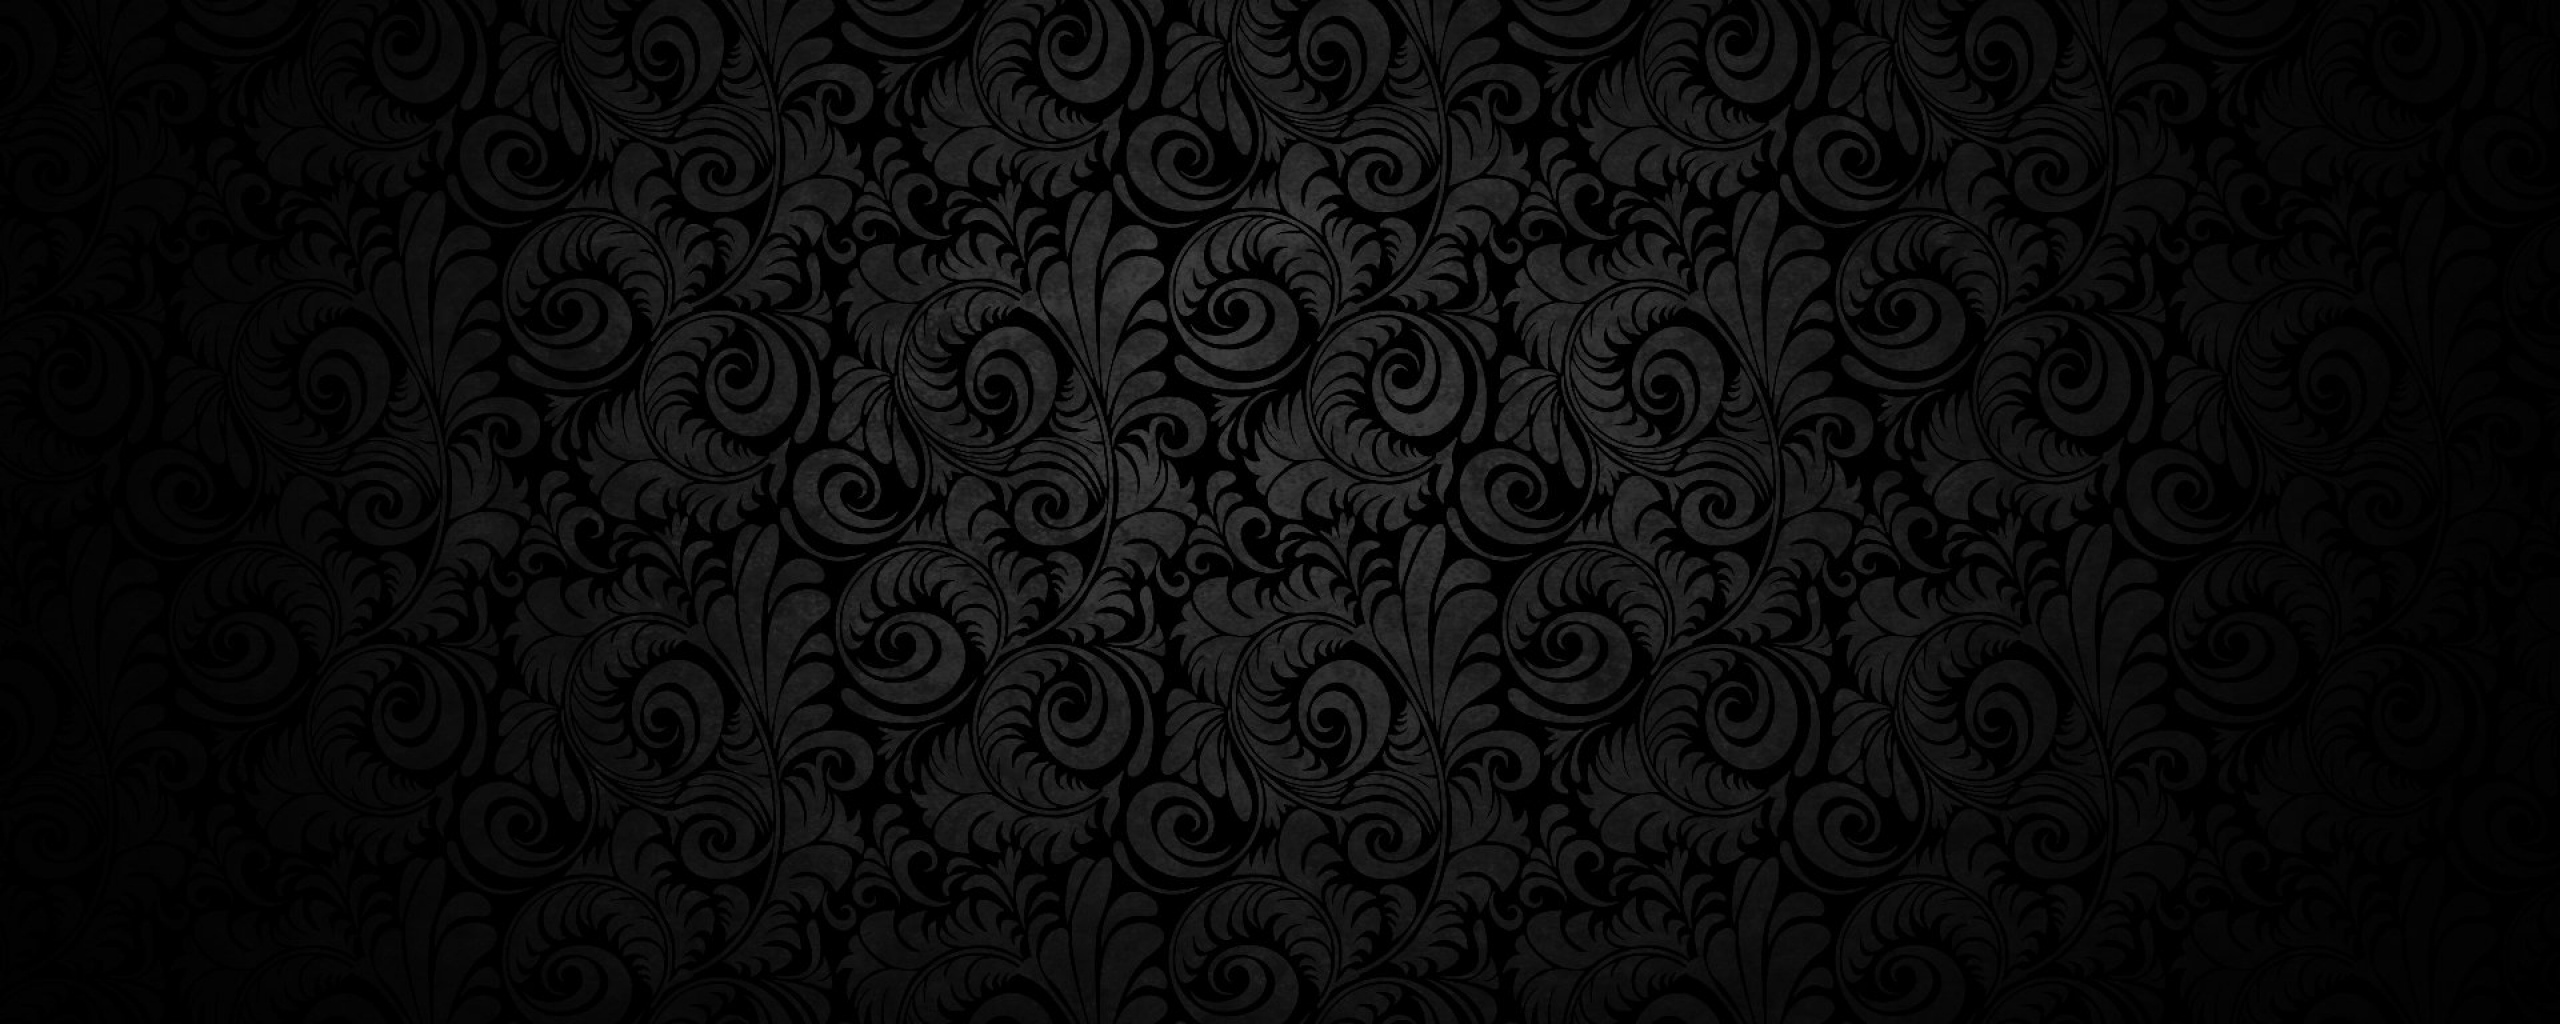 Spooky wallpaper | 1280x800 | #6718